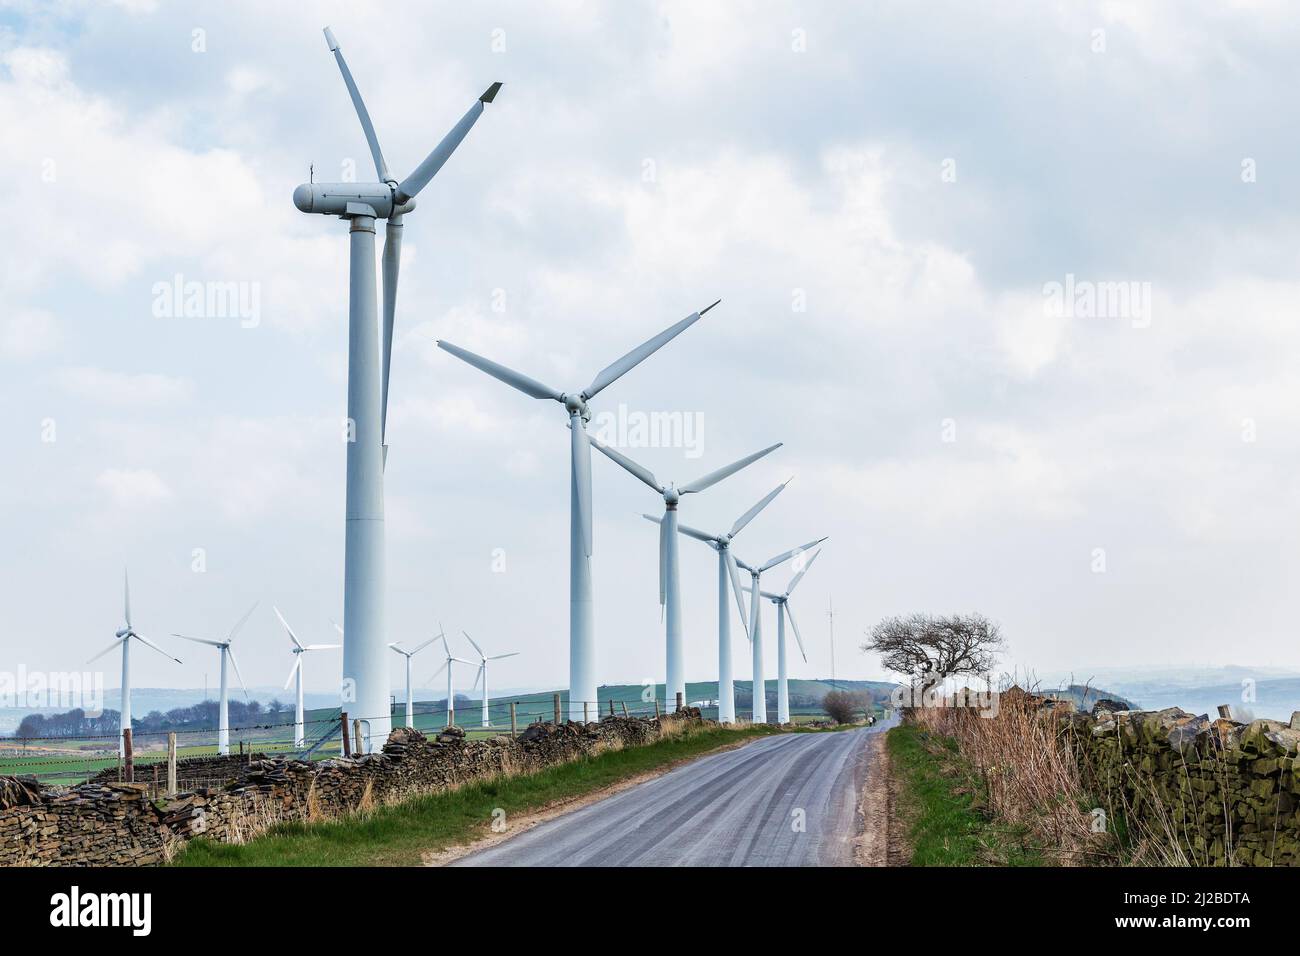 Yorkshire Windturbinen erzeugen grünen Strom. Globale Ökologie.sauberes Energiekonzept rettet die Welt. Hochwertige Fotos Stockfoto